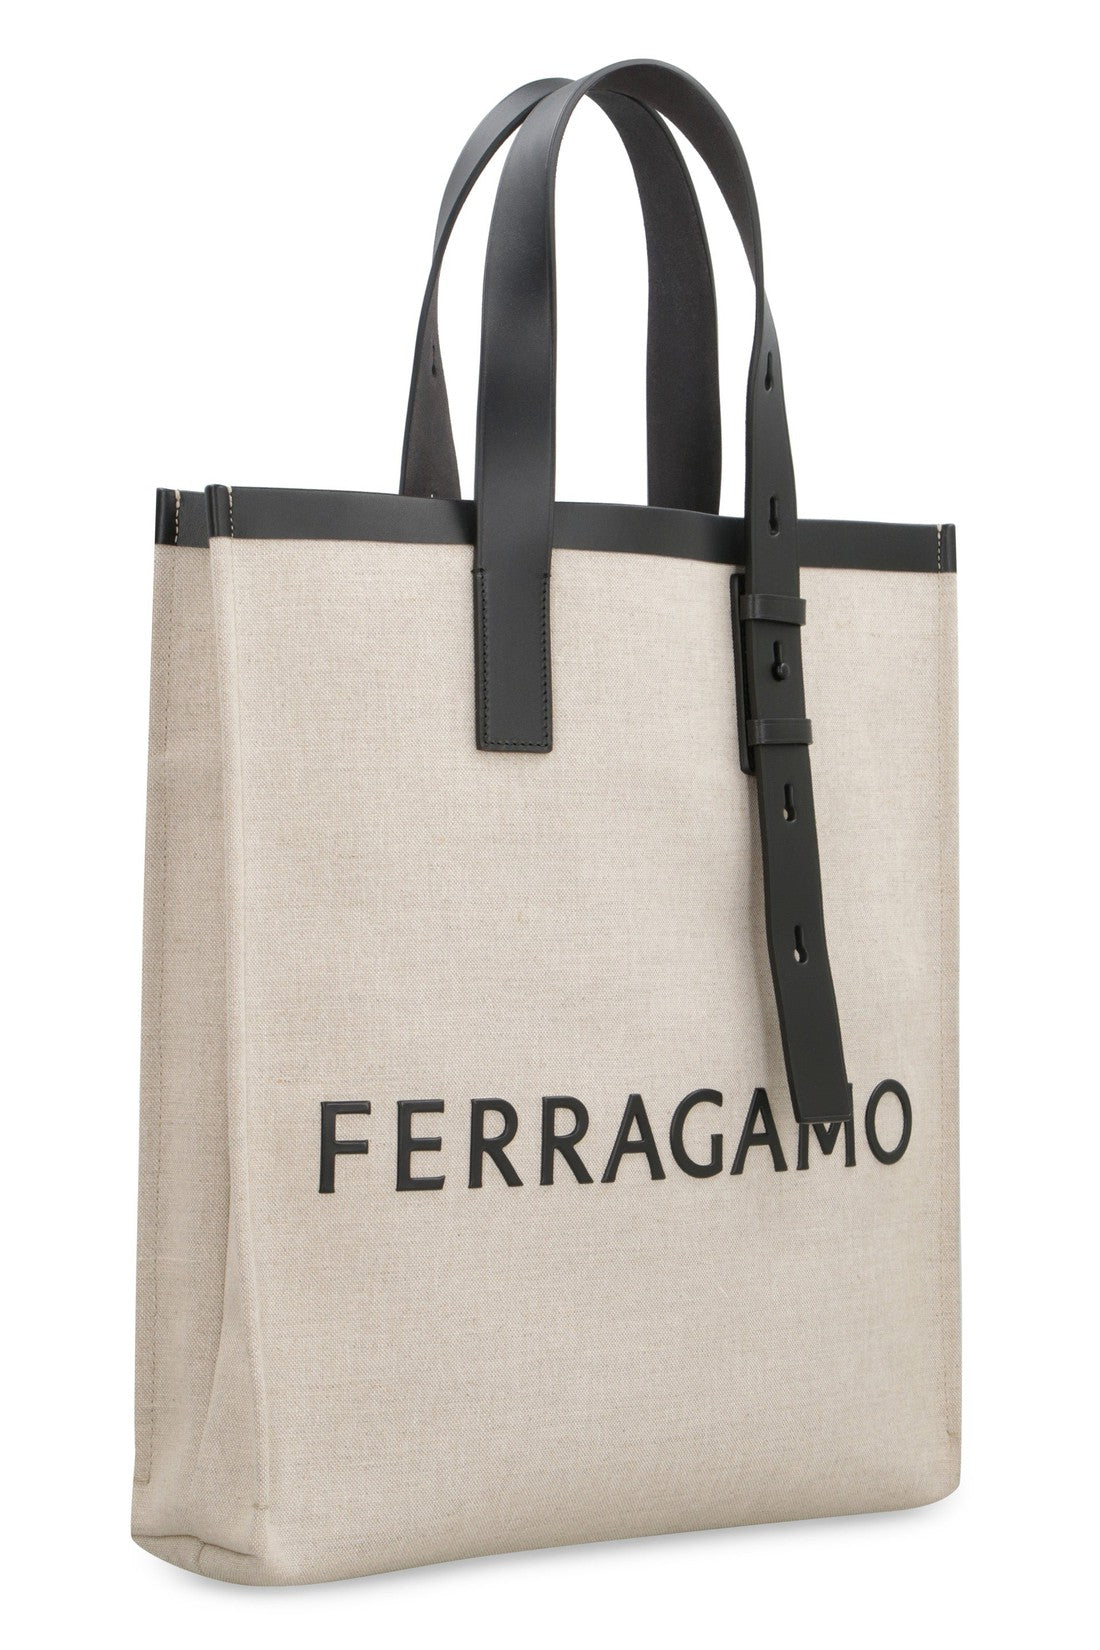 FERRAGAMO-OUTLET-SALE-Canvas tote bag-ARCHIVIST